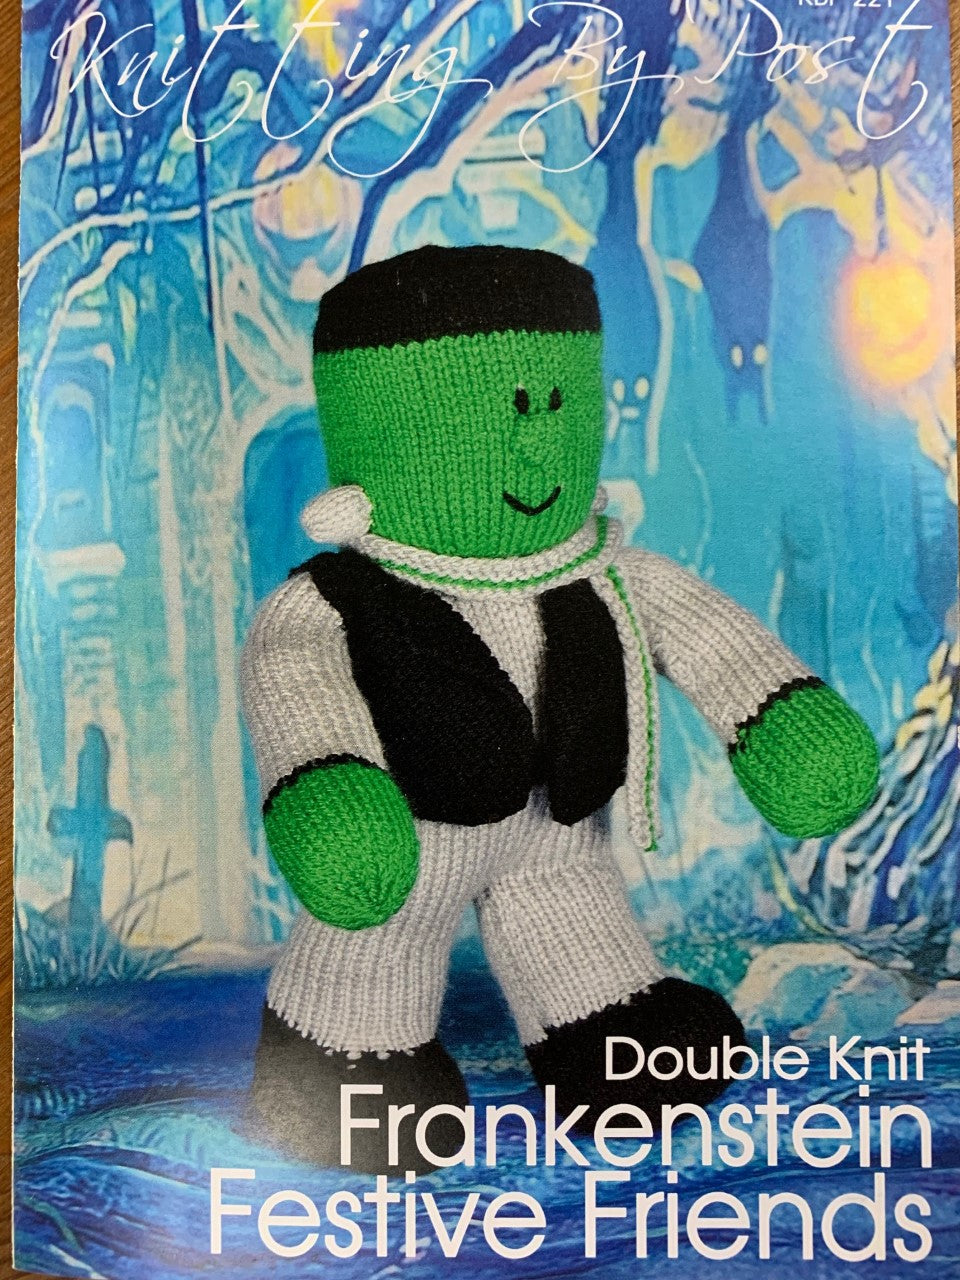 KBP-221 Frankenstein Festive Friends toy in DK knitting pattern